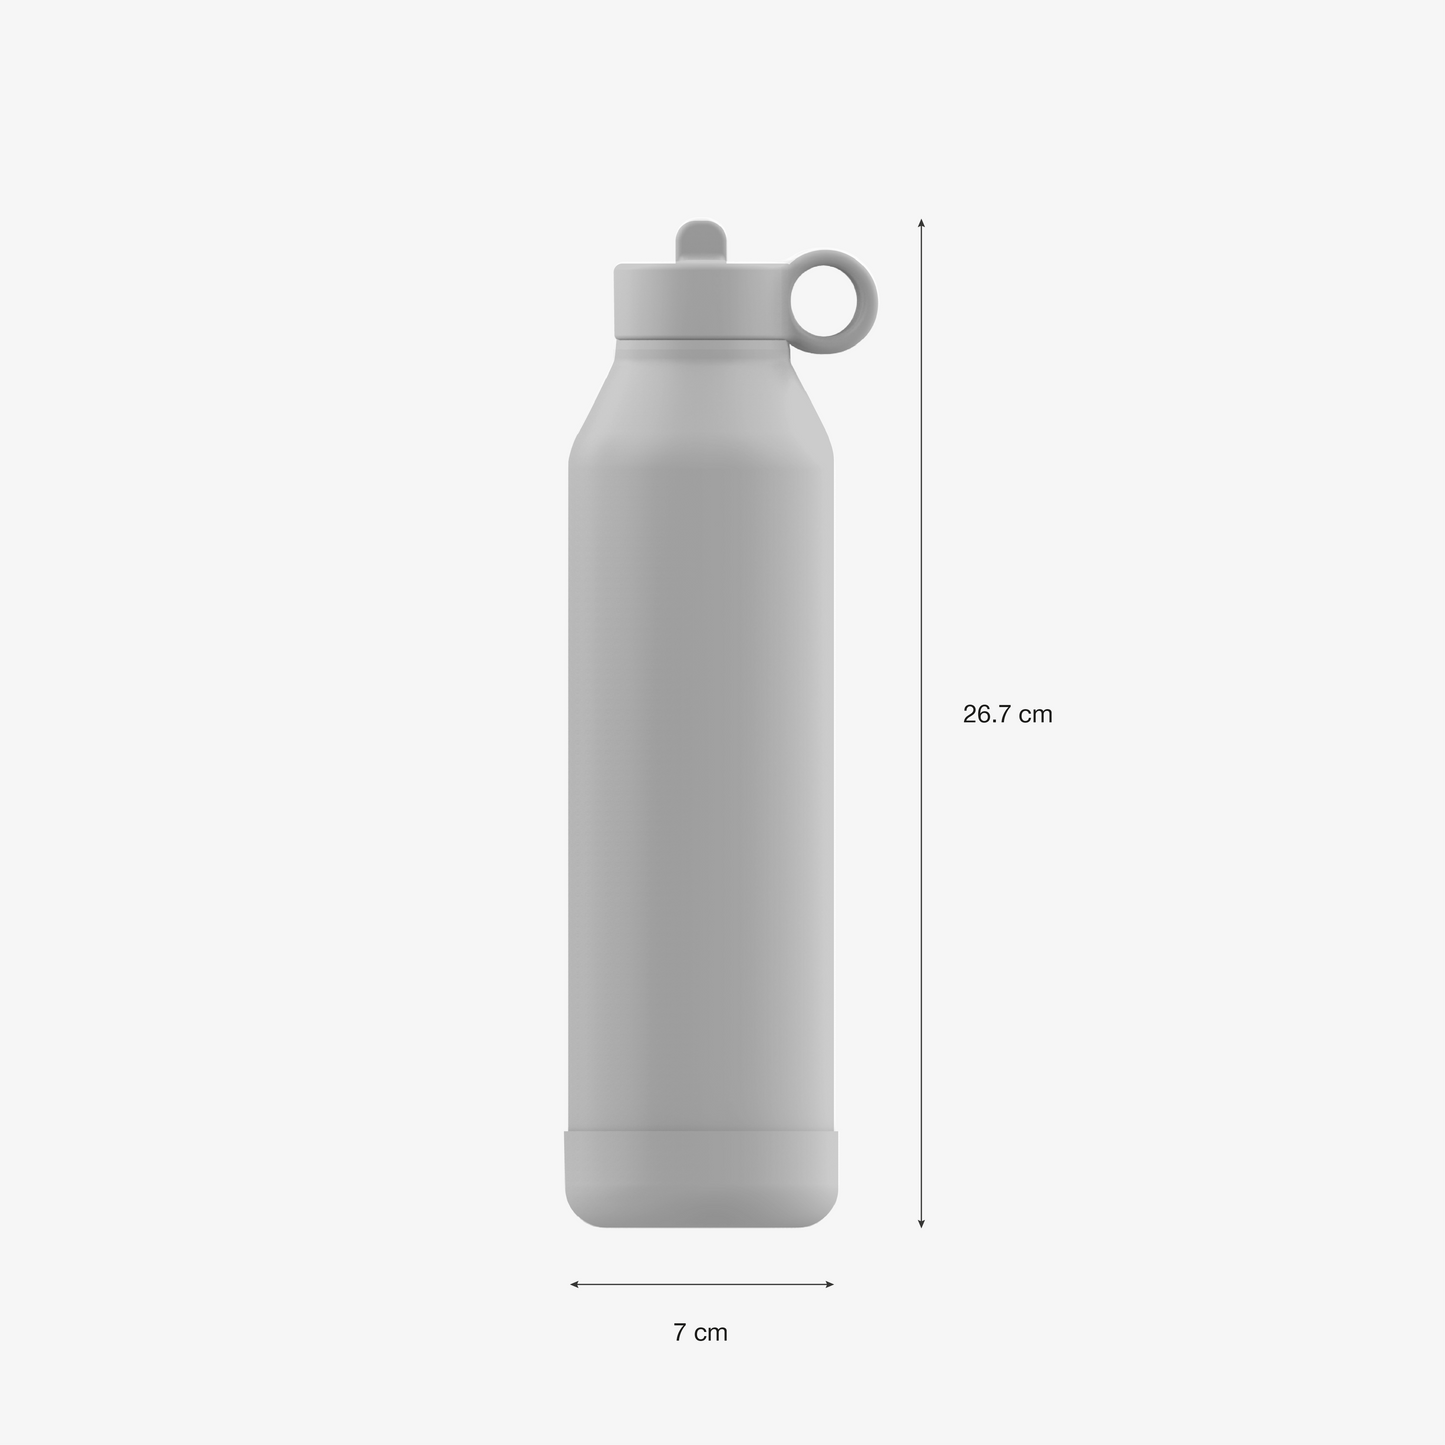 Large Water Bottle - 750ml - Leo